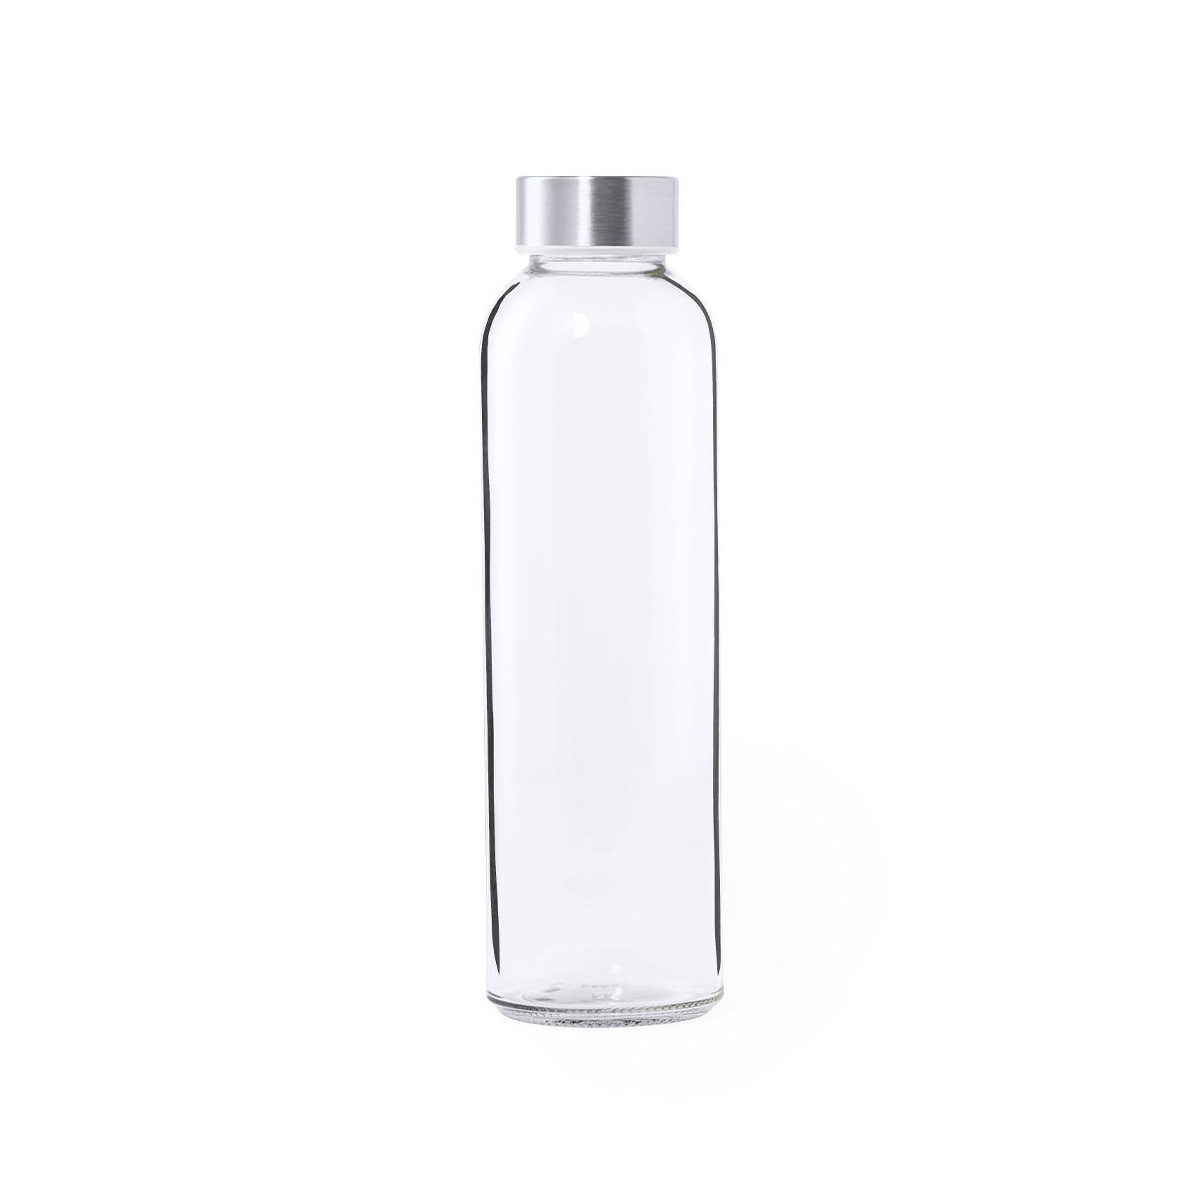 Botella transparente de cristal con tapón de acero